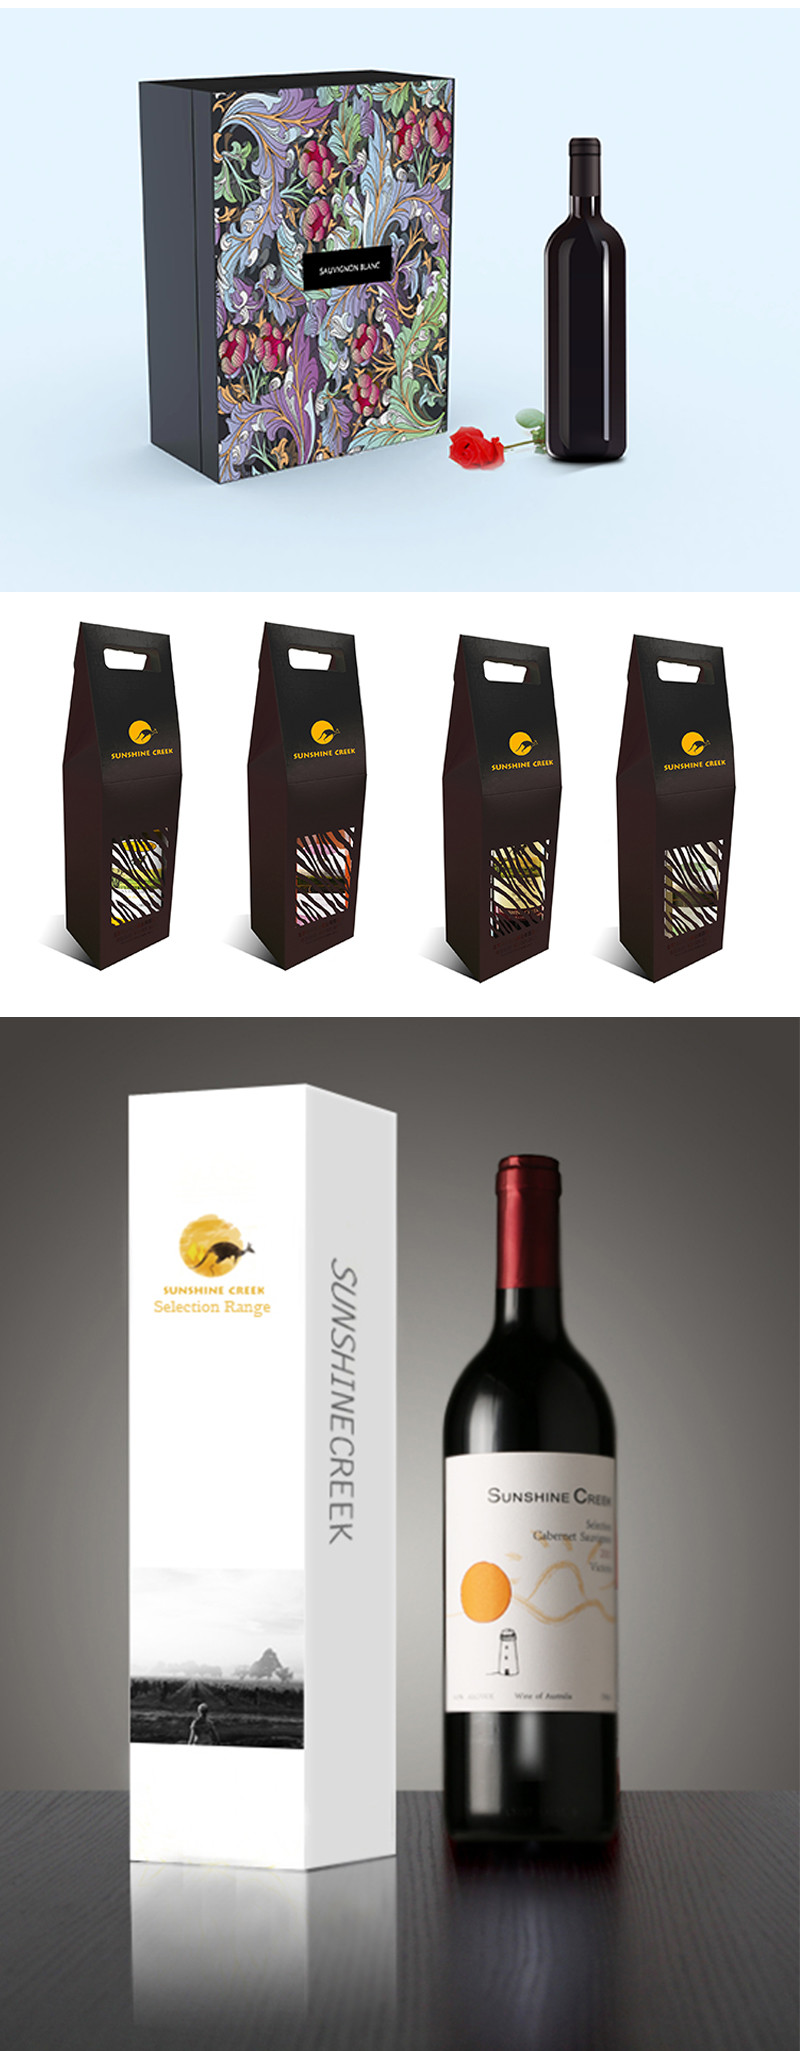 高档红酒系列化包装设计